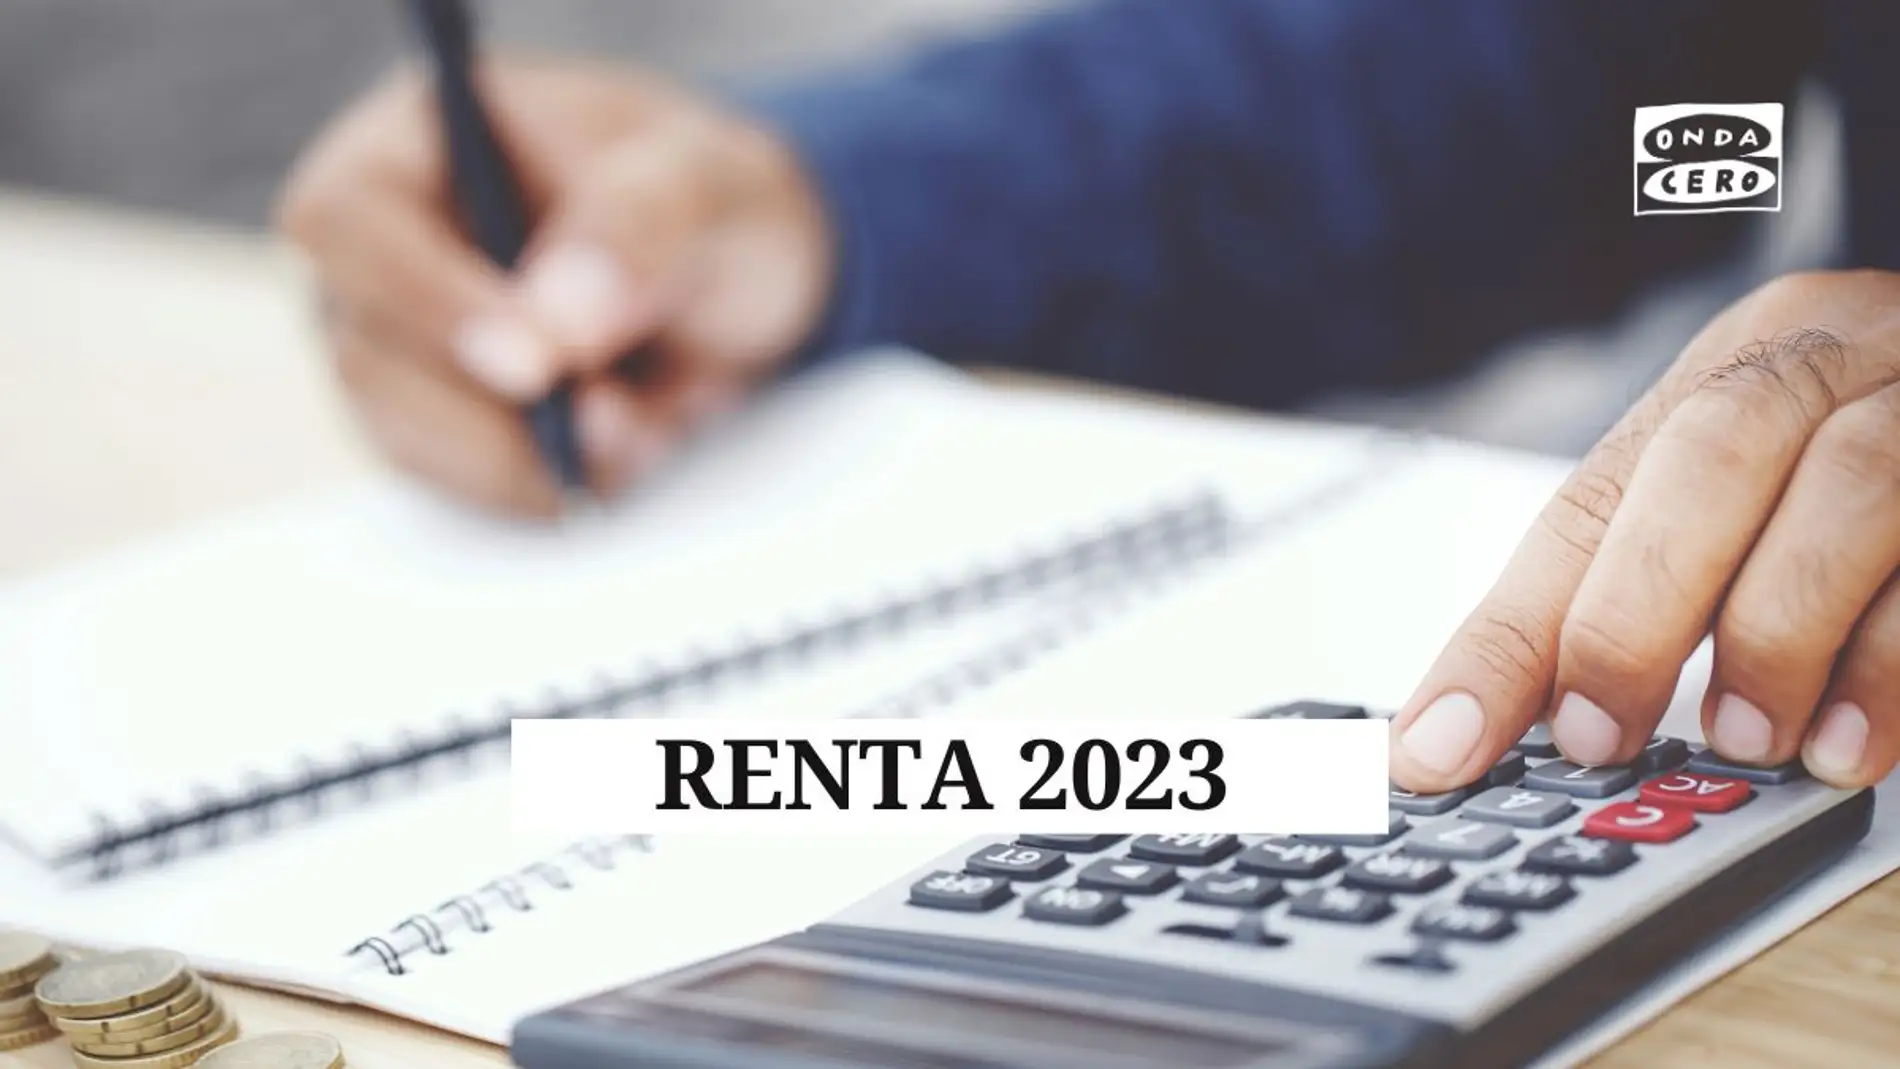 Declaración de la Renta 2023, últimas noticias: todo sobre el borrador, deducciones, casillas clave...